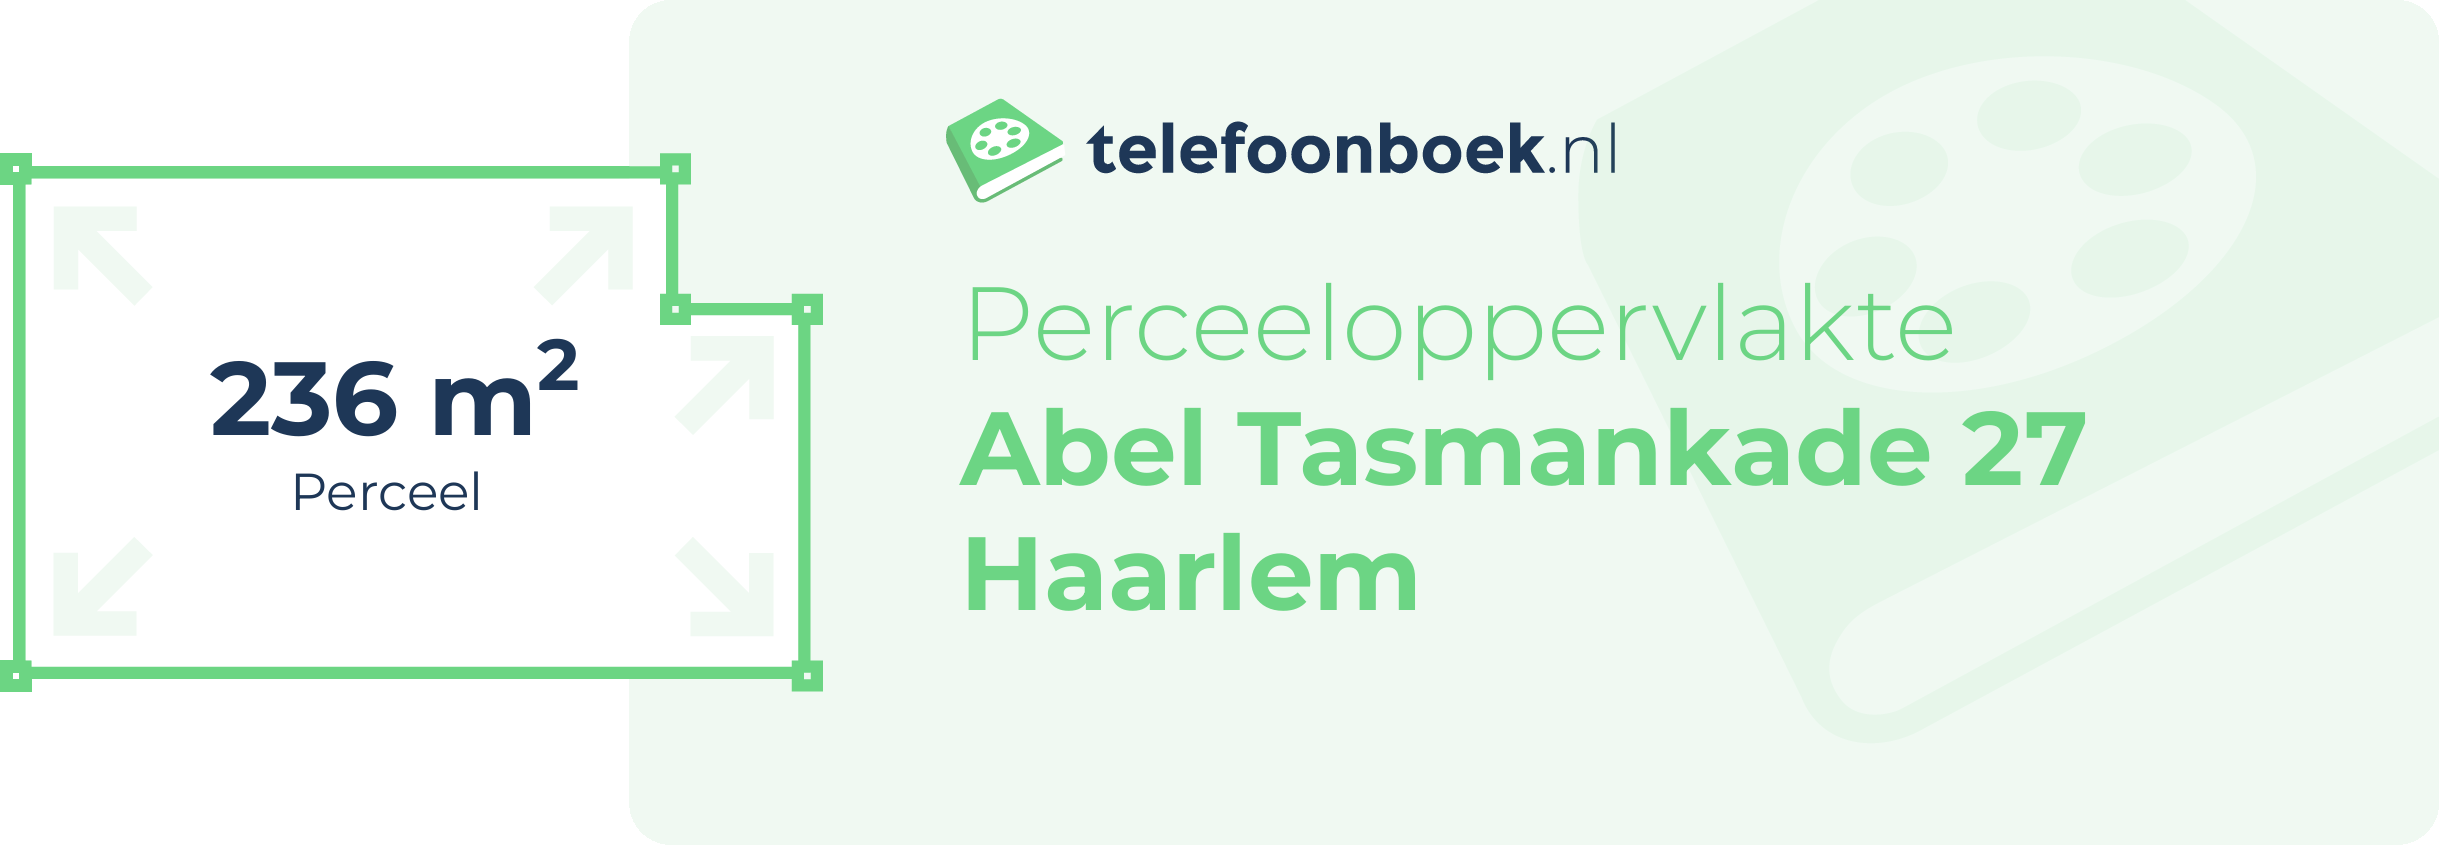 Perceeloppervlakte Abel Tasmankade 27 Haarlem